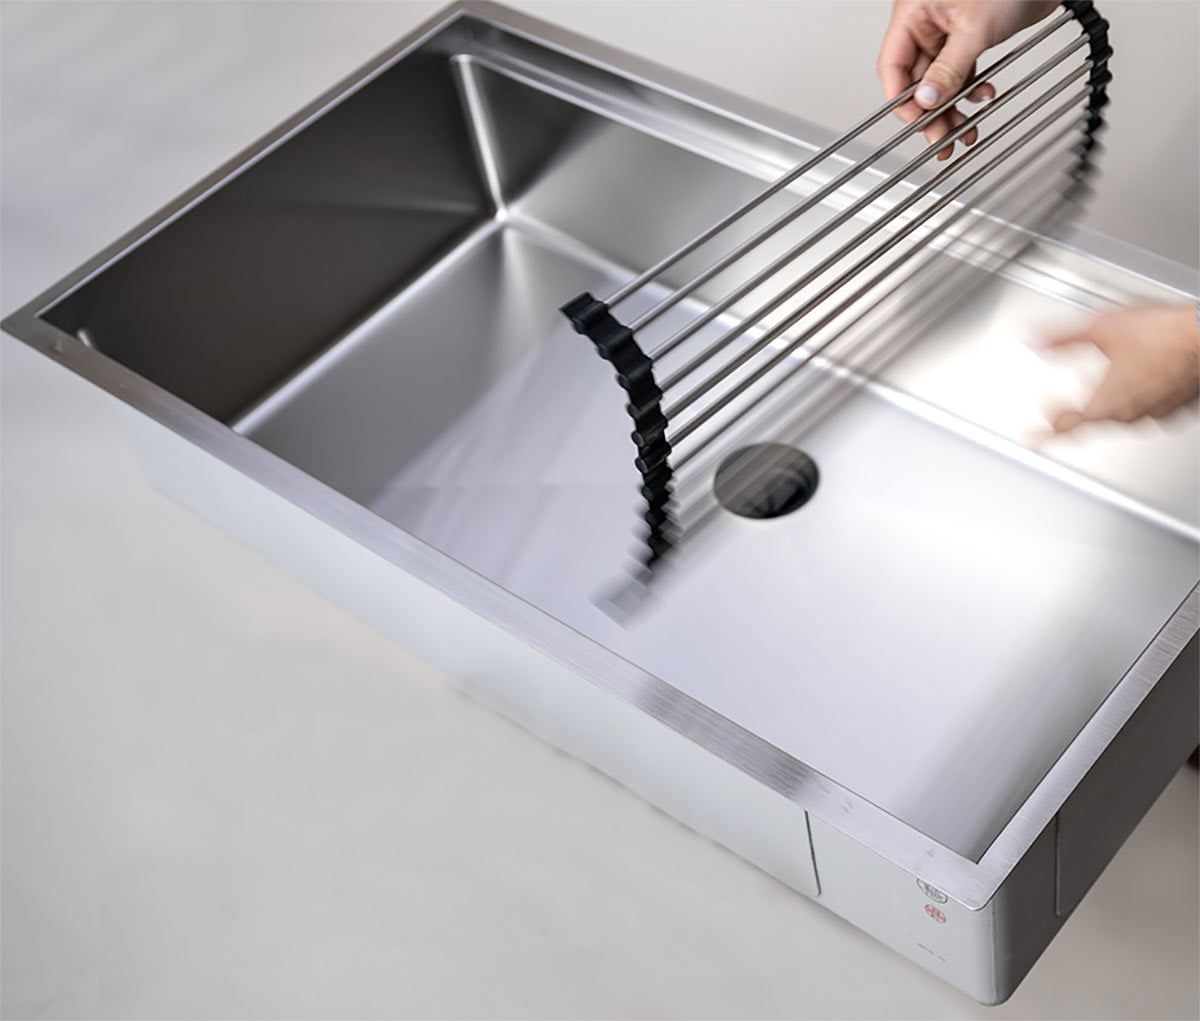 Create Good Sinks' Rollmat in a Workstation Kitchen Sink